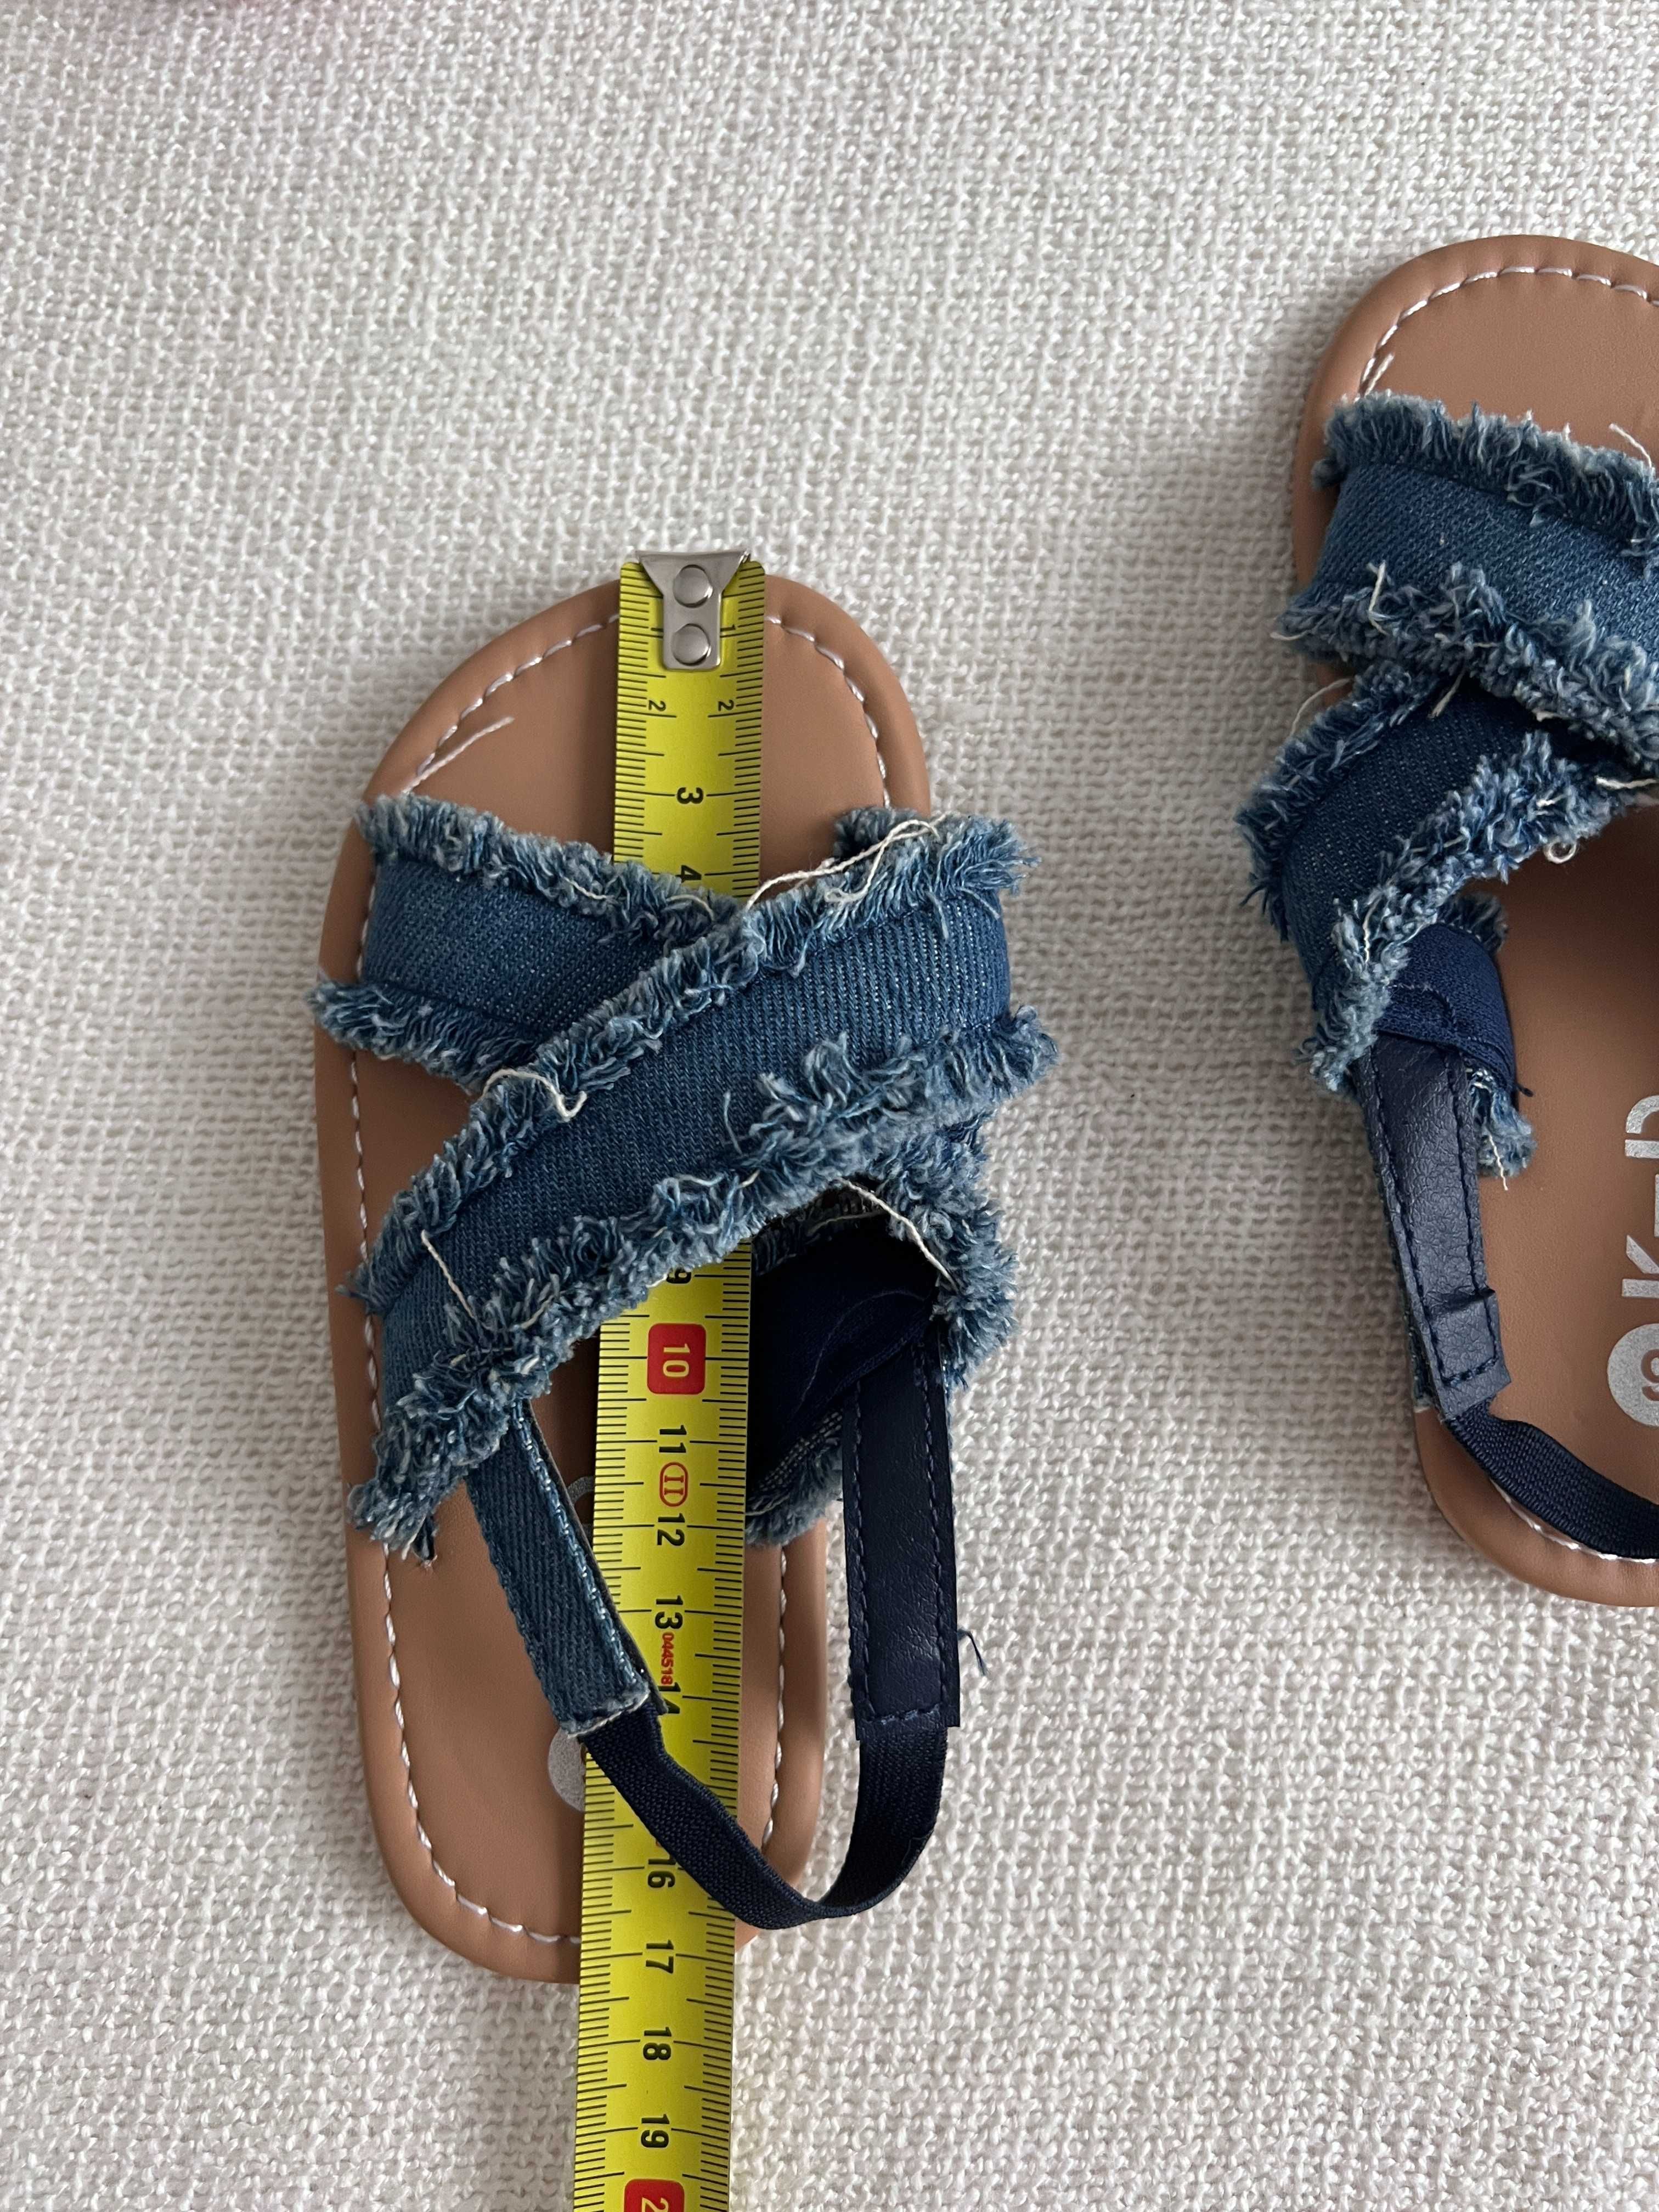 NOWE sandałki dziewczęce jeansowe rozmiar 25/26 dł wkładki 16 cm